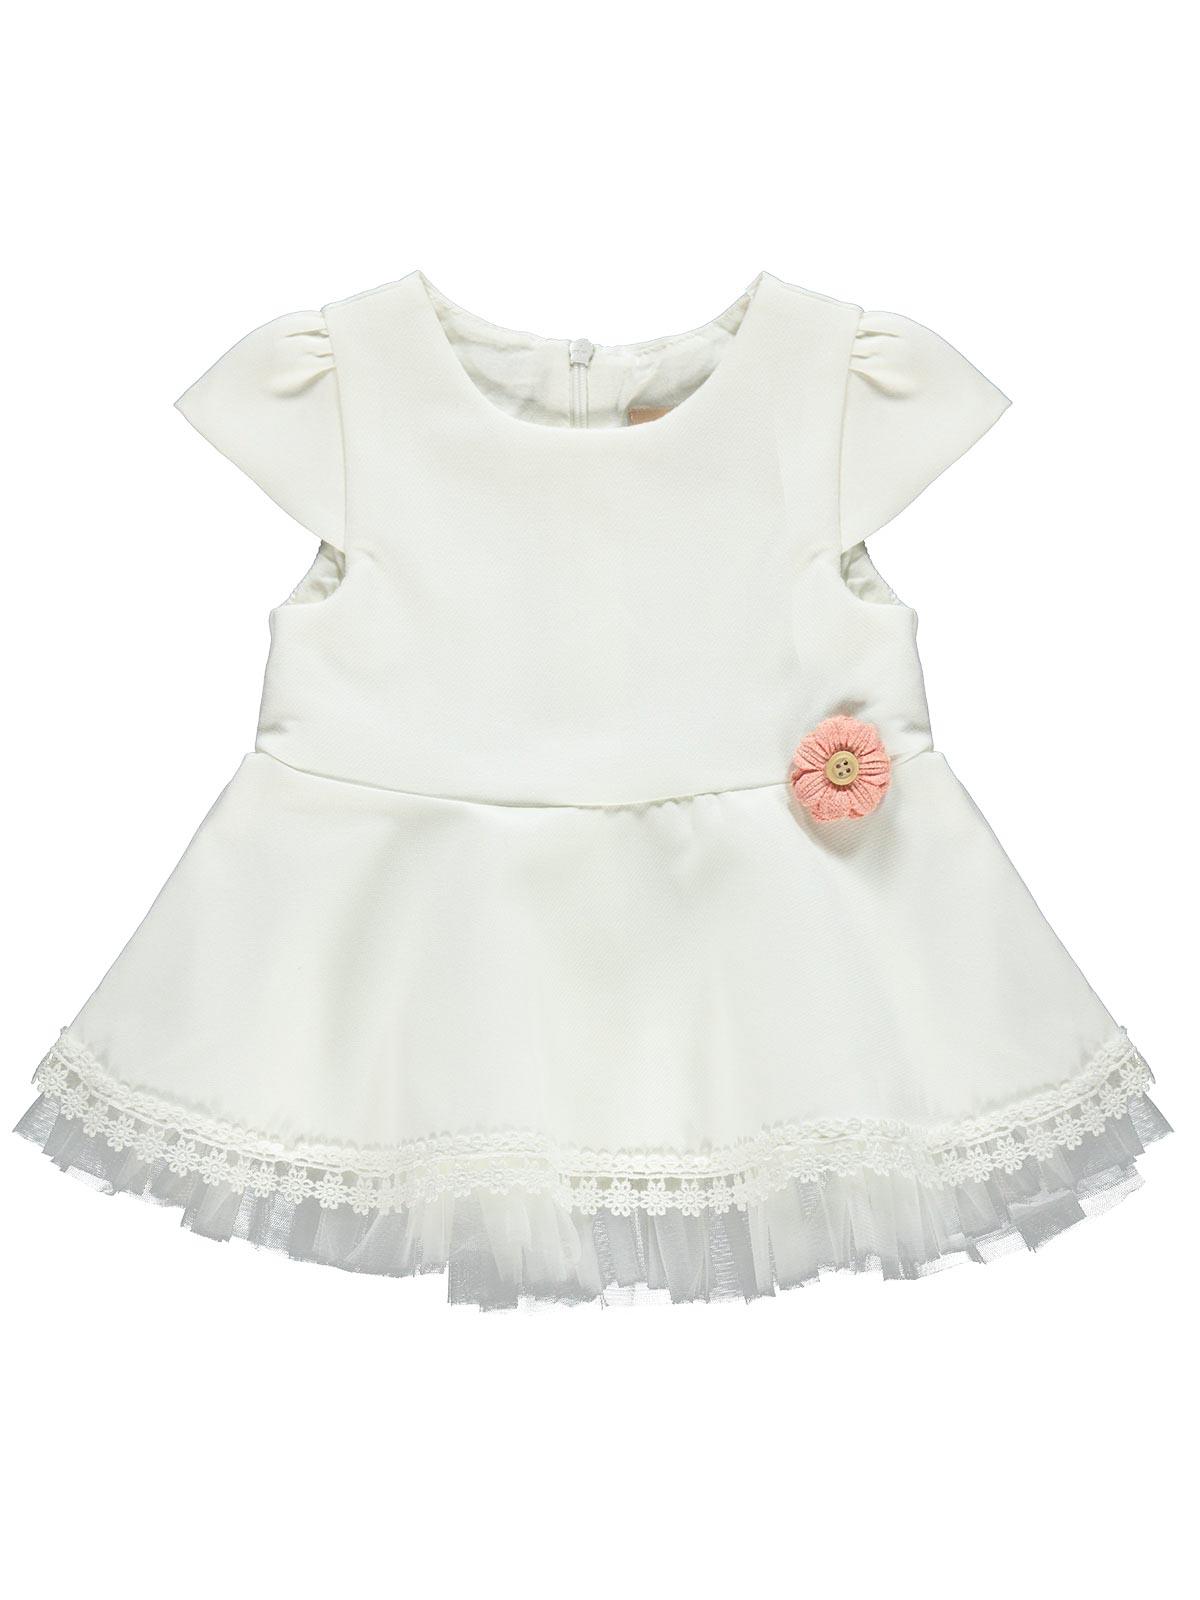 Wecan Kız Bebek Elbise 6-18 Ay Ekru